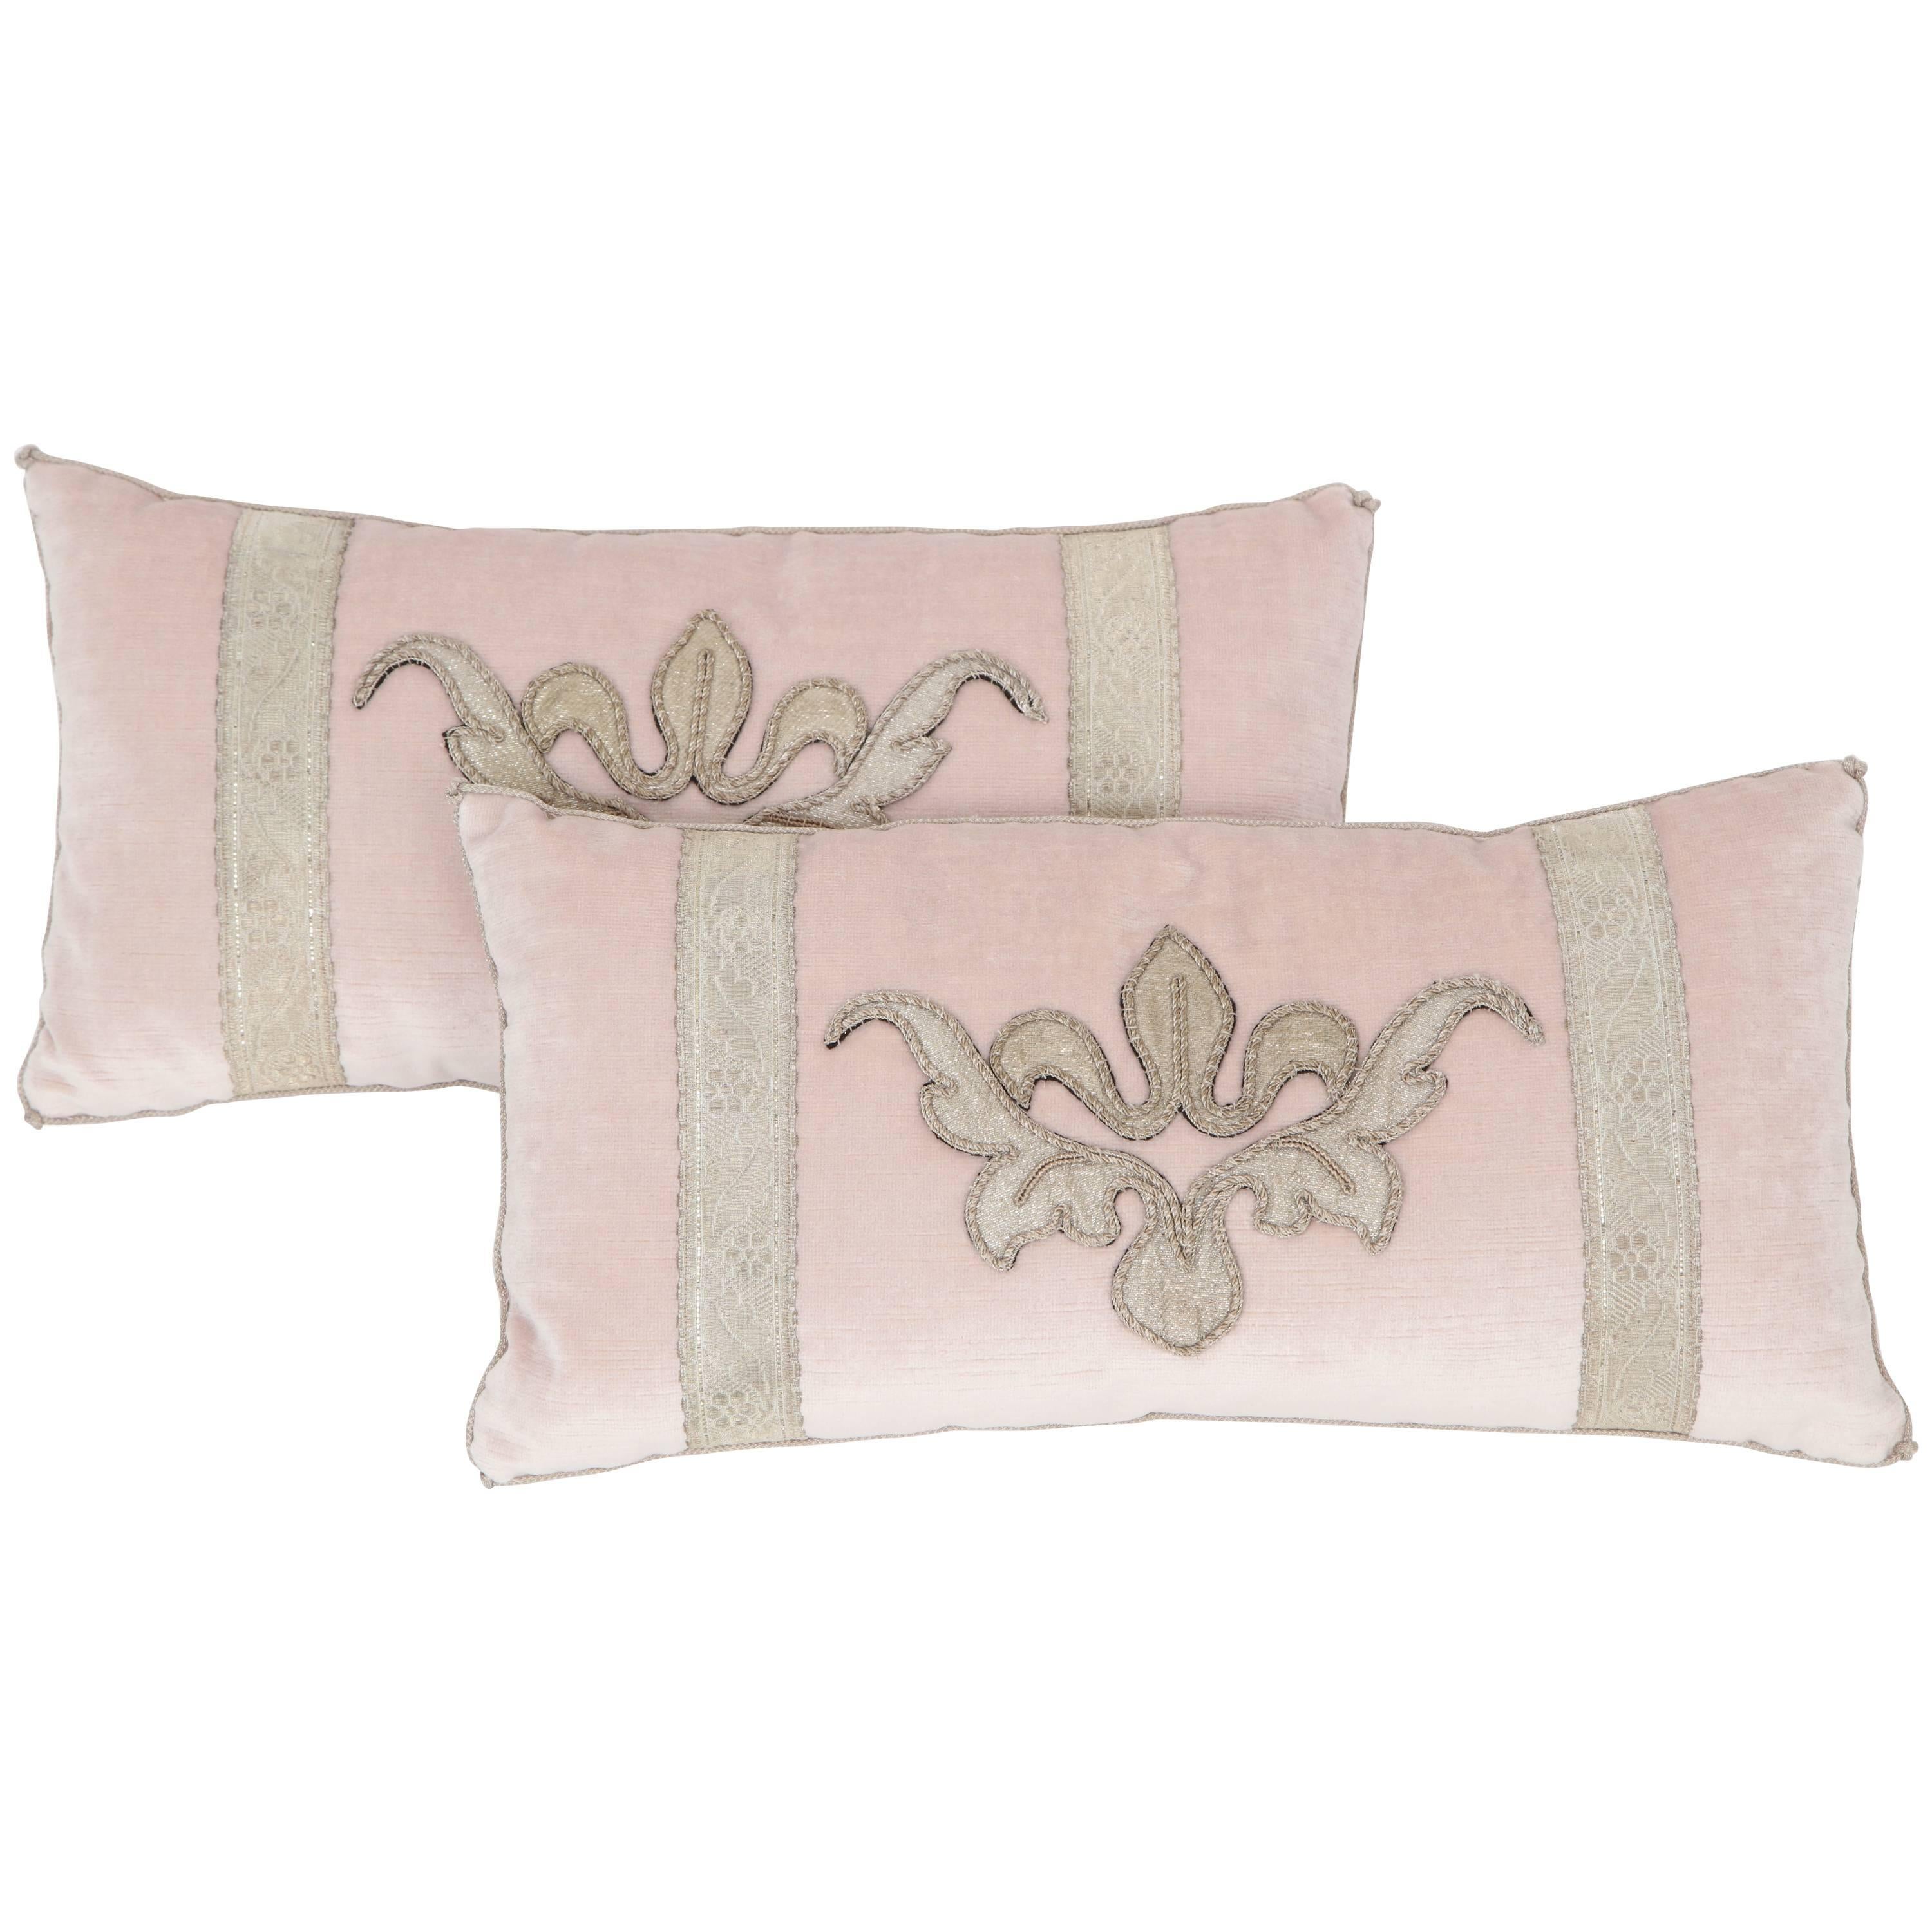 Pair of Blush Pink Velvet Pillows